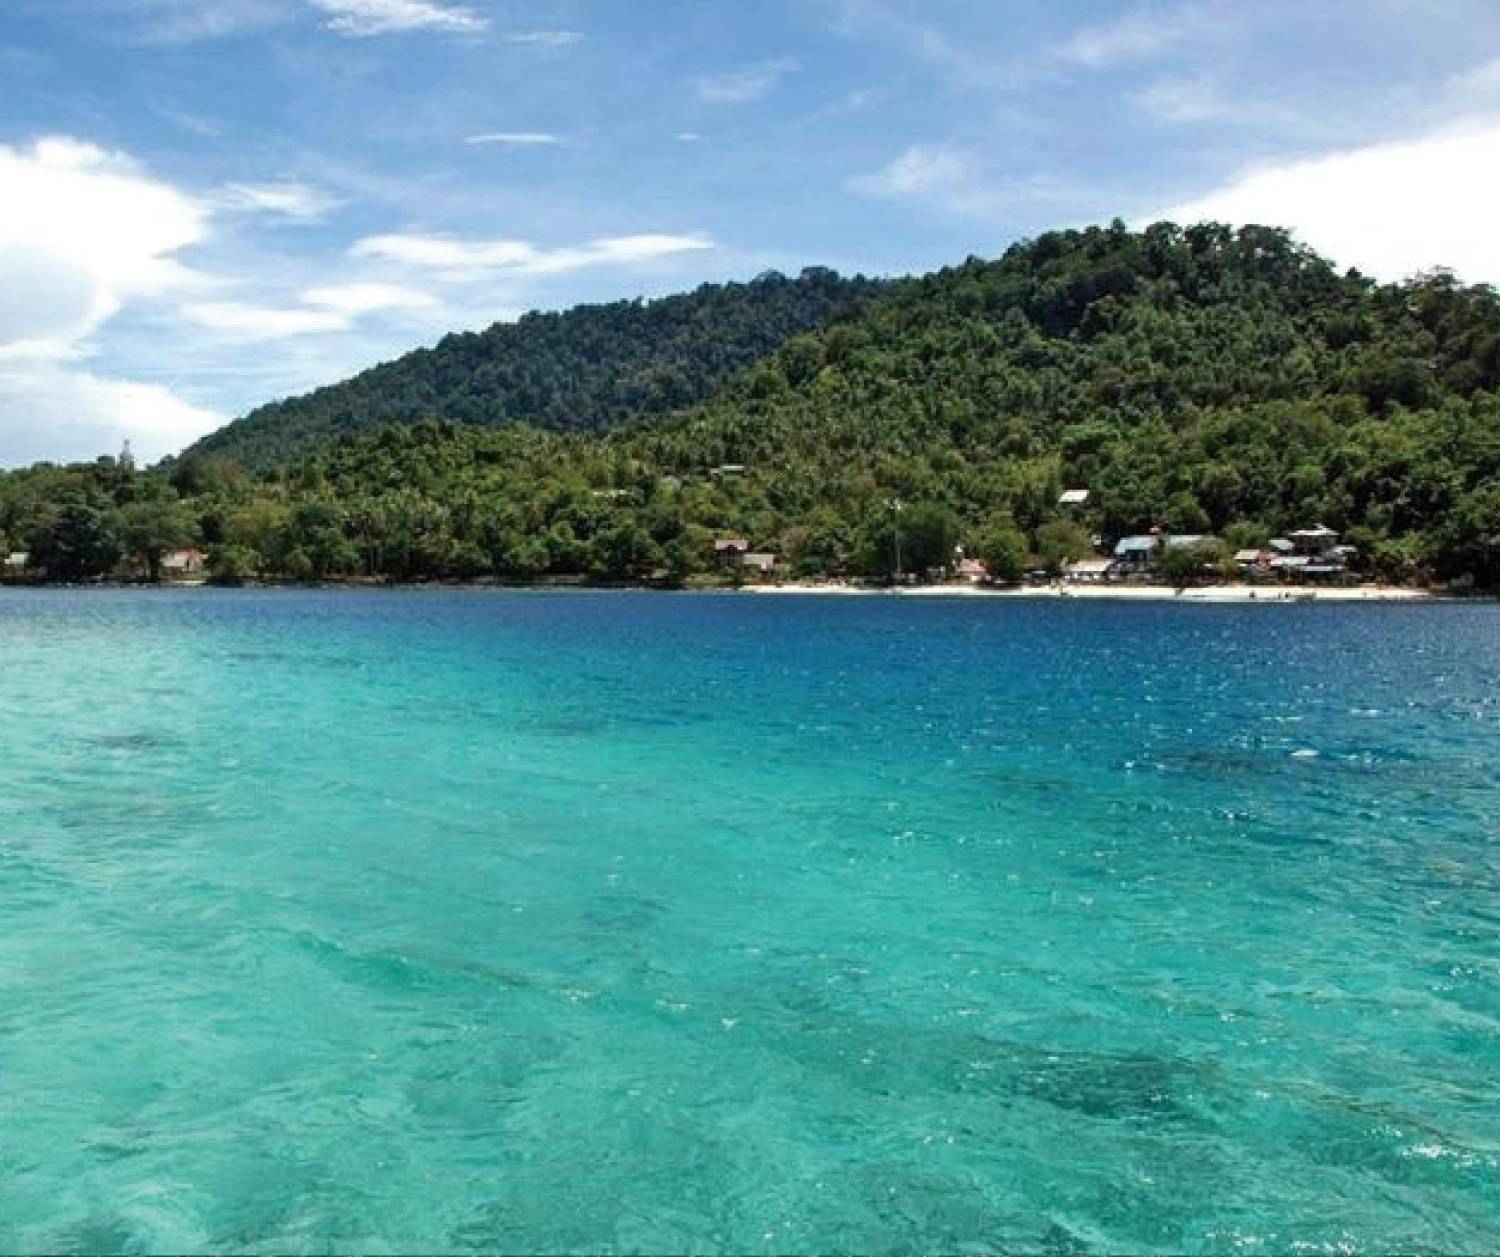 【印尼】Pulau Weh Resort 6日5夜潛水自由行套票